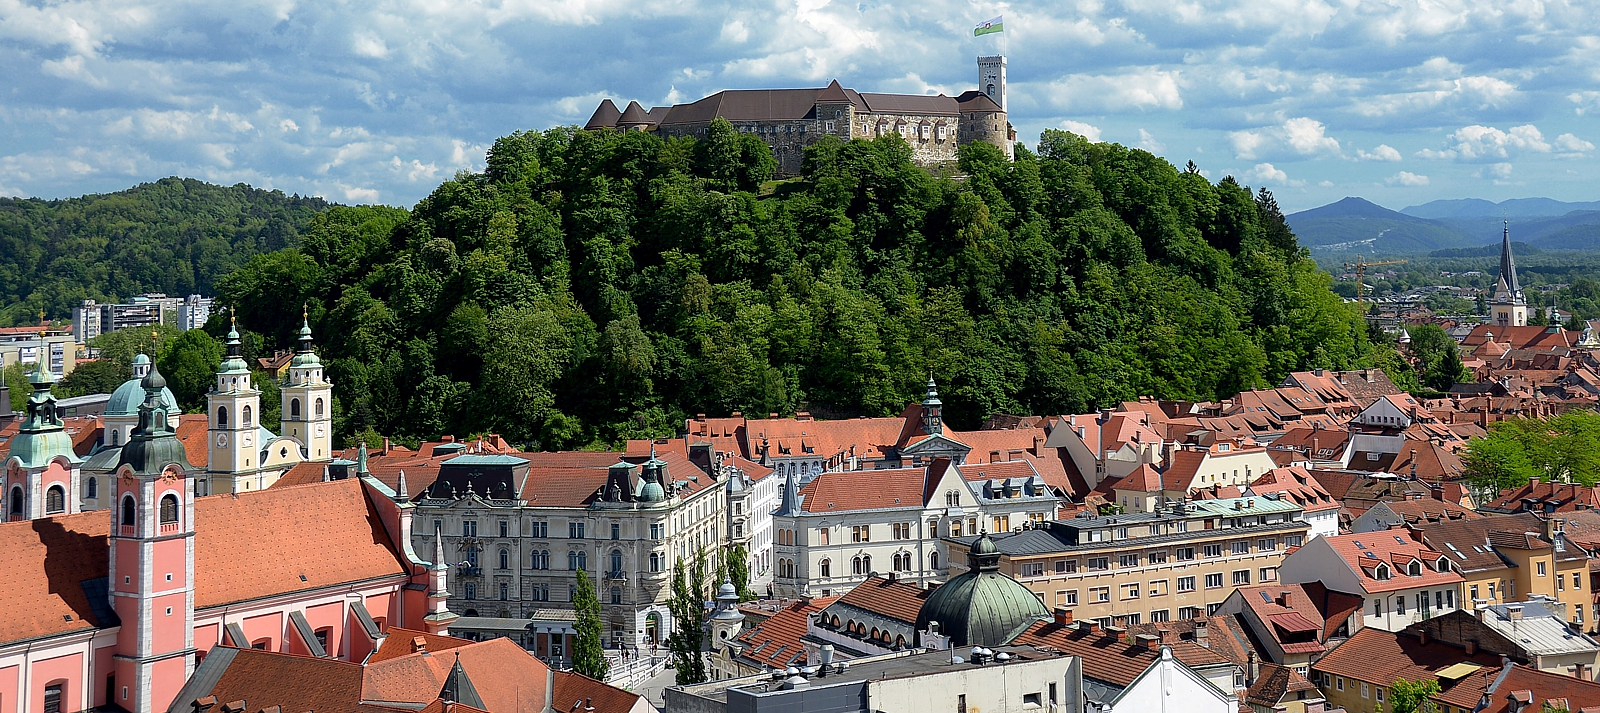 Ljubljana: Castle